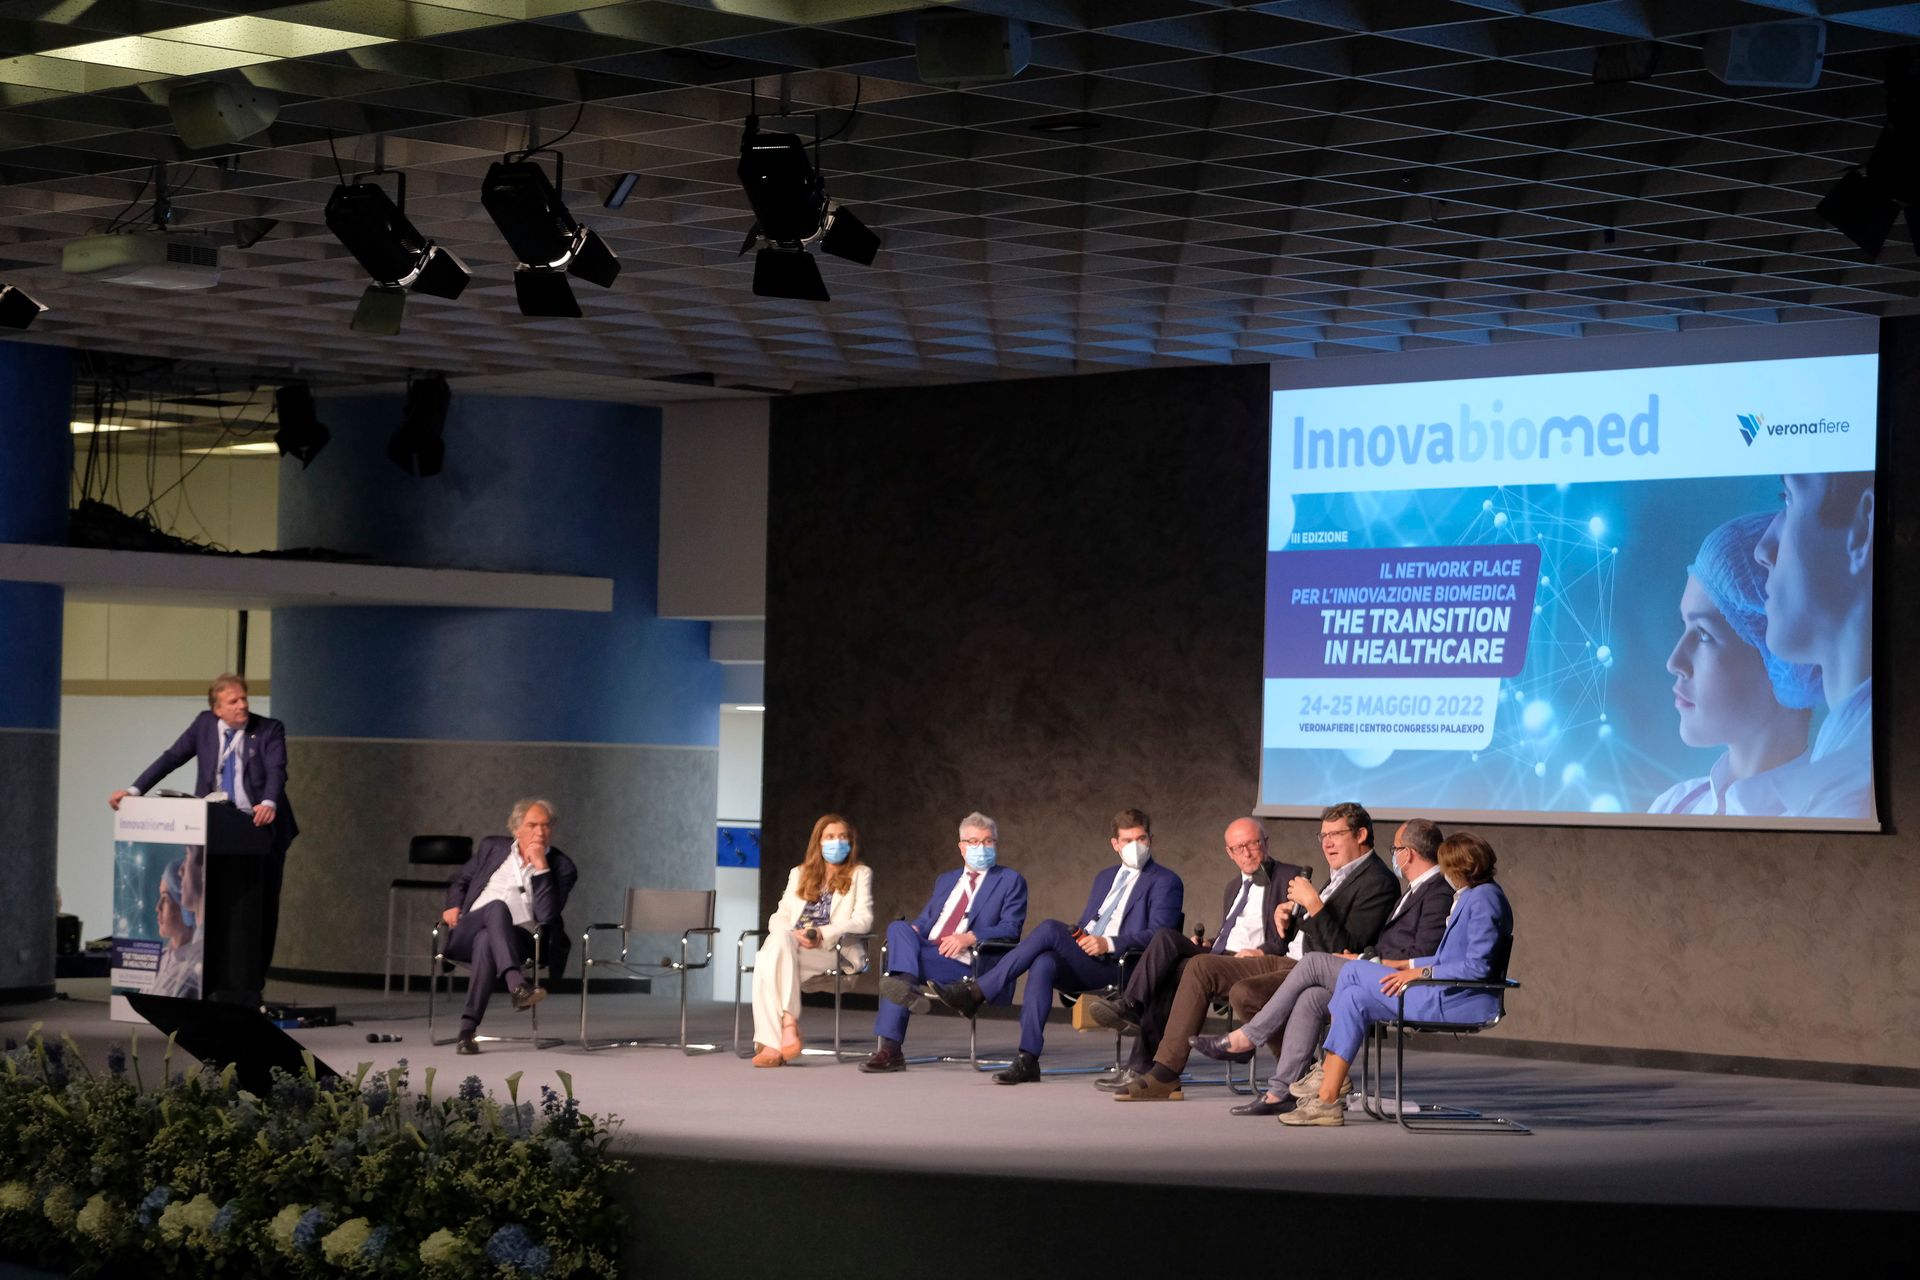 La giornata inaugurale del network e formation place "Innovabiomed" al Palaexpo di Verona il 24 maggio 2022